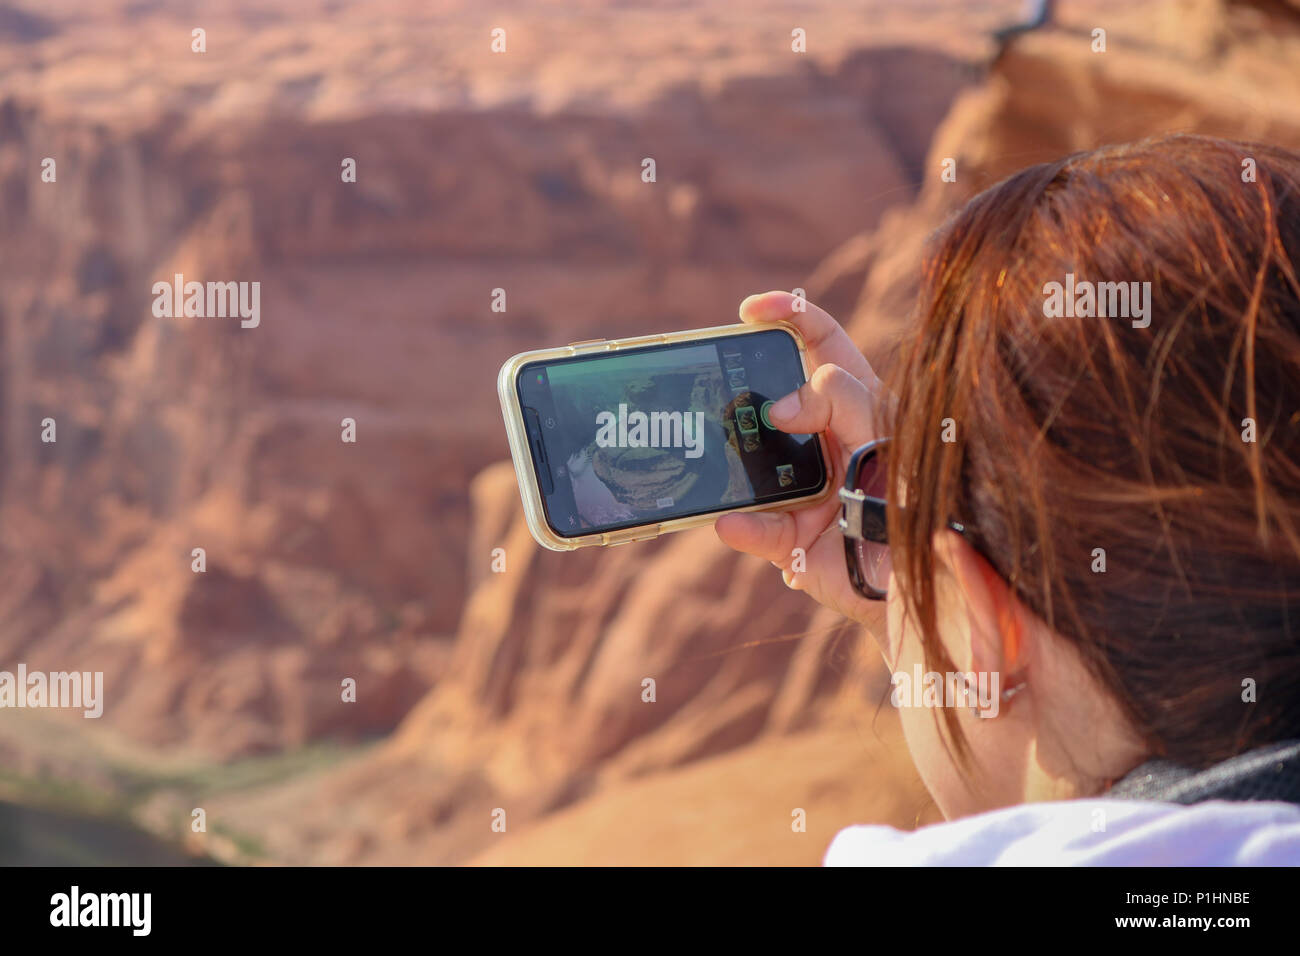 Smart phone view della curva a ferro di cavallo in Arizona. Ragazza giovane donna, scattare una foto con il suo iPhone della mitica linea curva a ferro di cavallo. Foto Stock